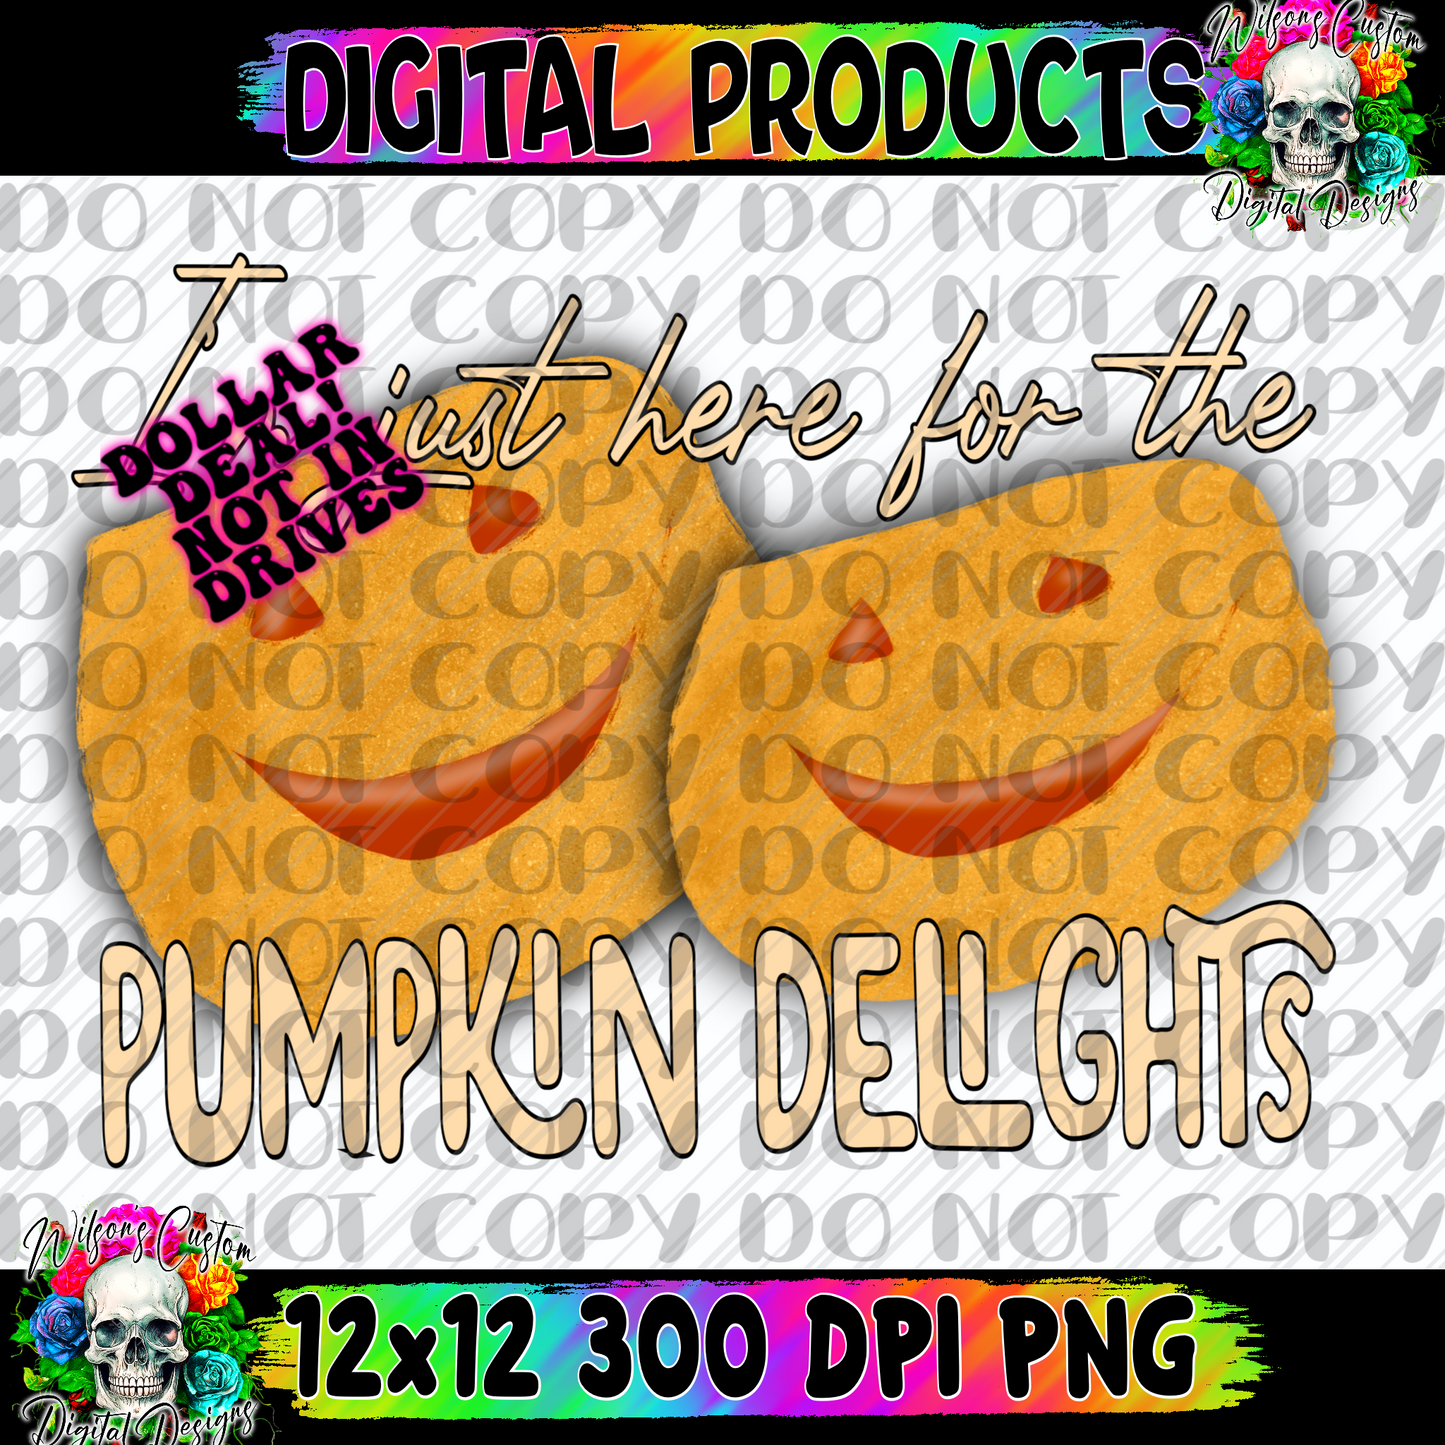 Pumpkin delights